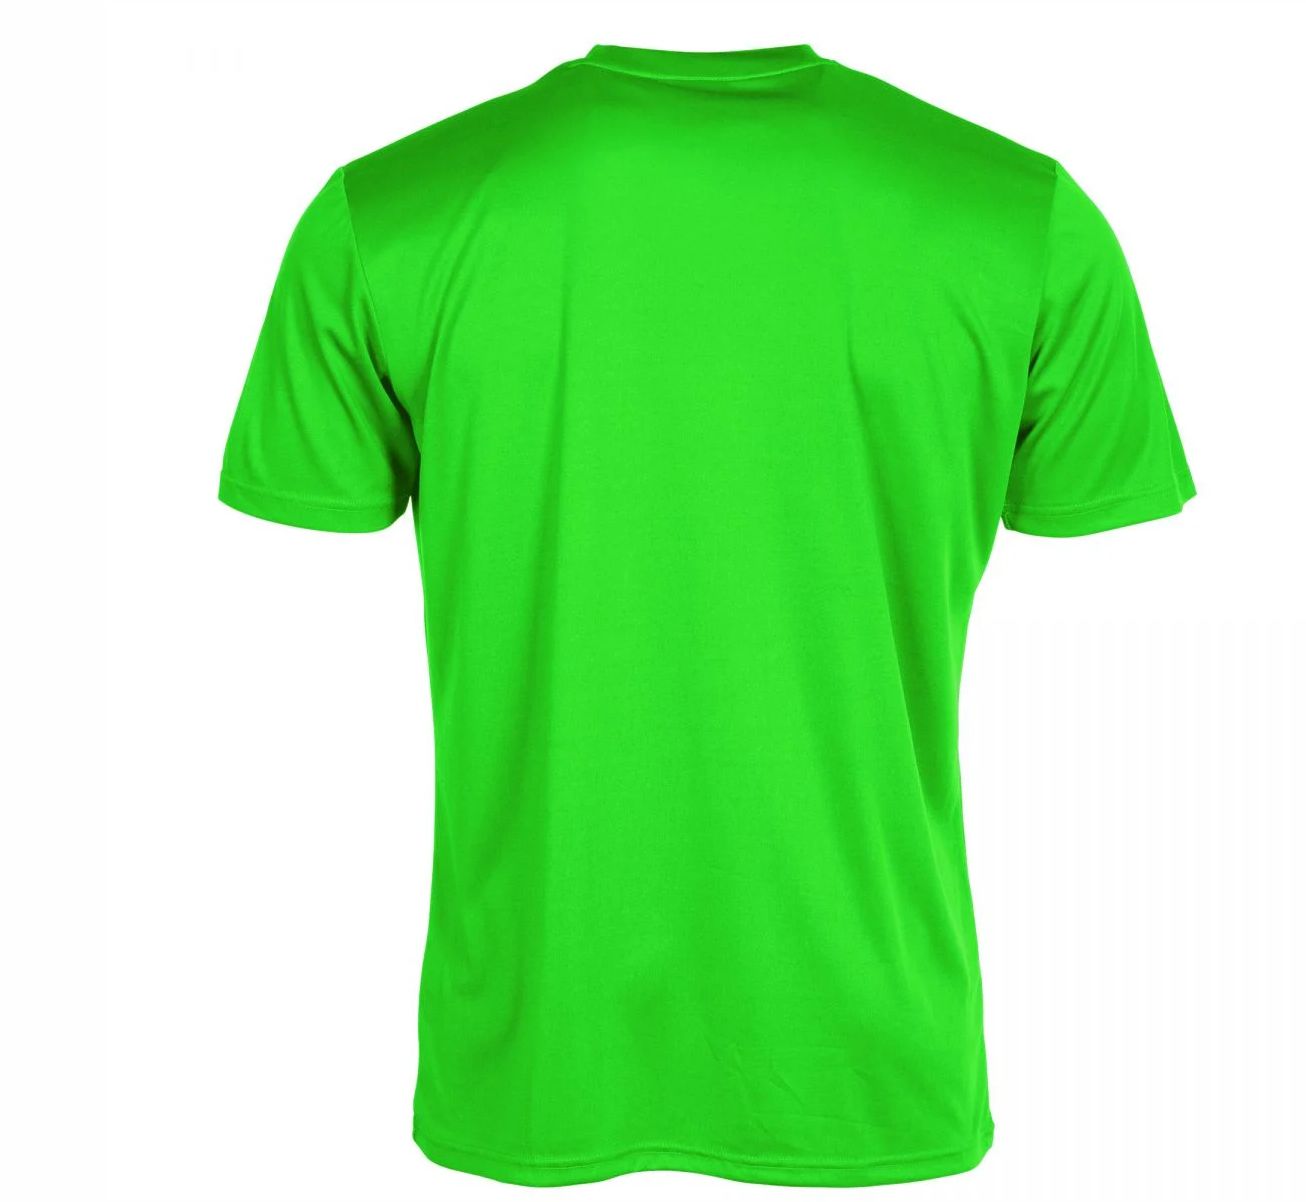 Stanno - Field Shirt - Neon Green